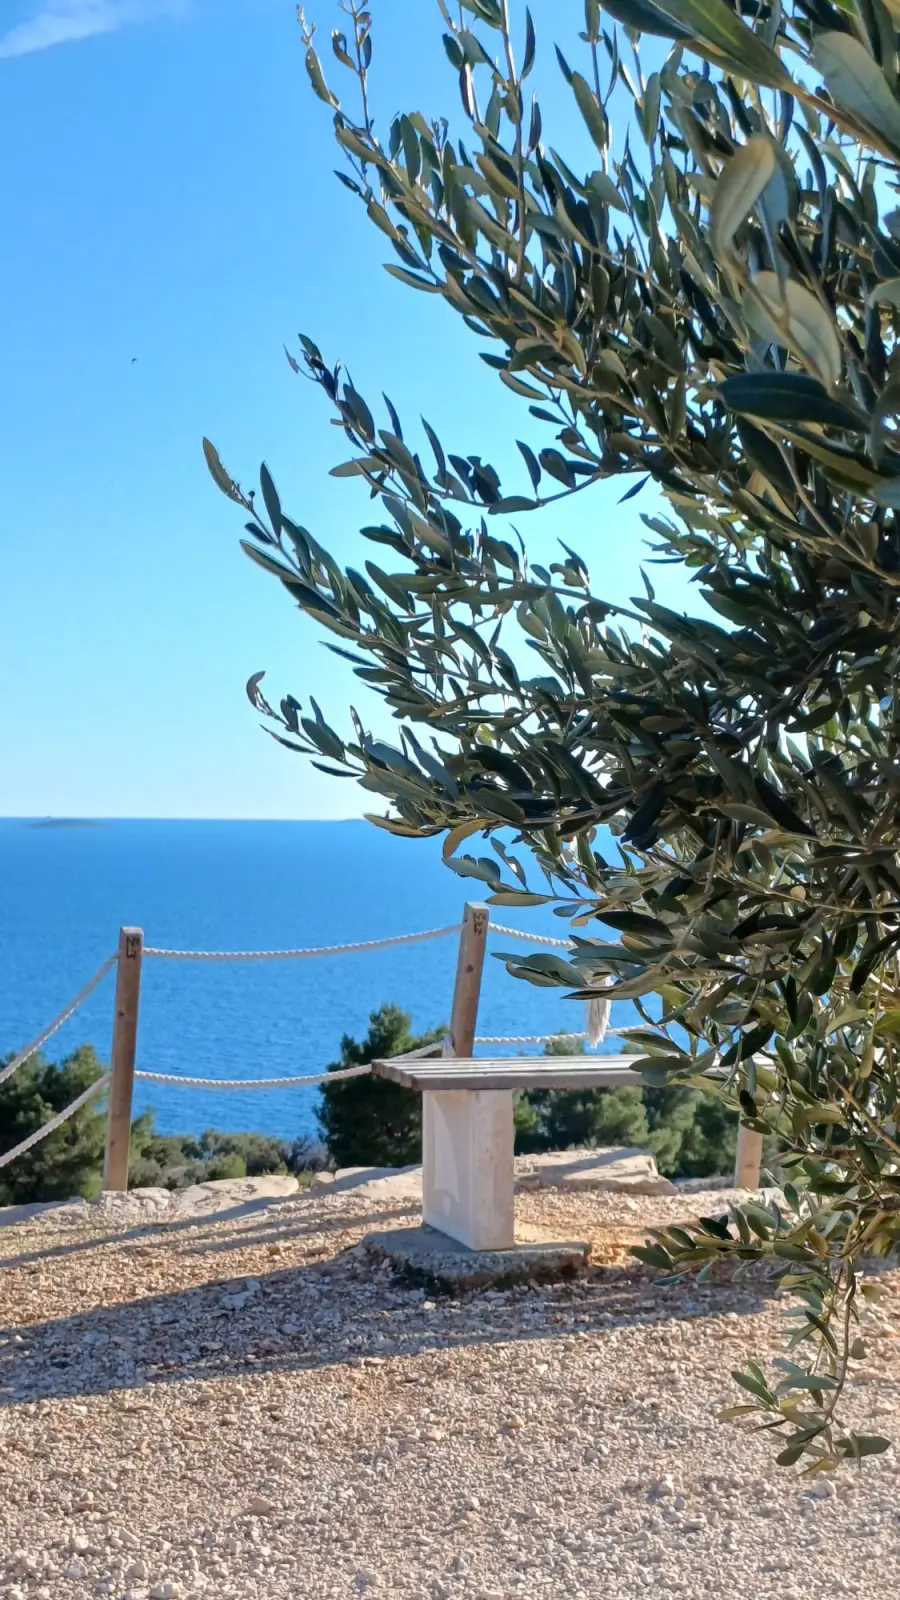 Holzbank mit Blick auf das Meer. Neben der Bank steht ein Olivenbaum.